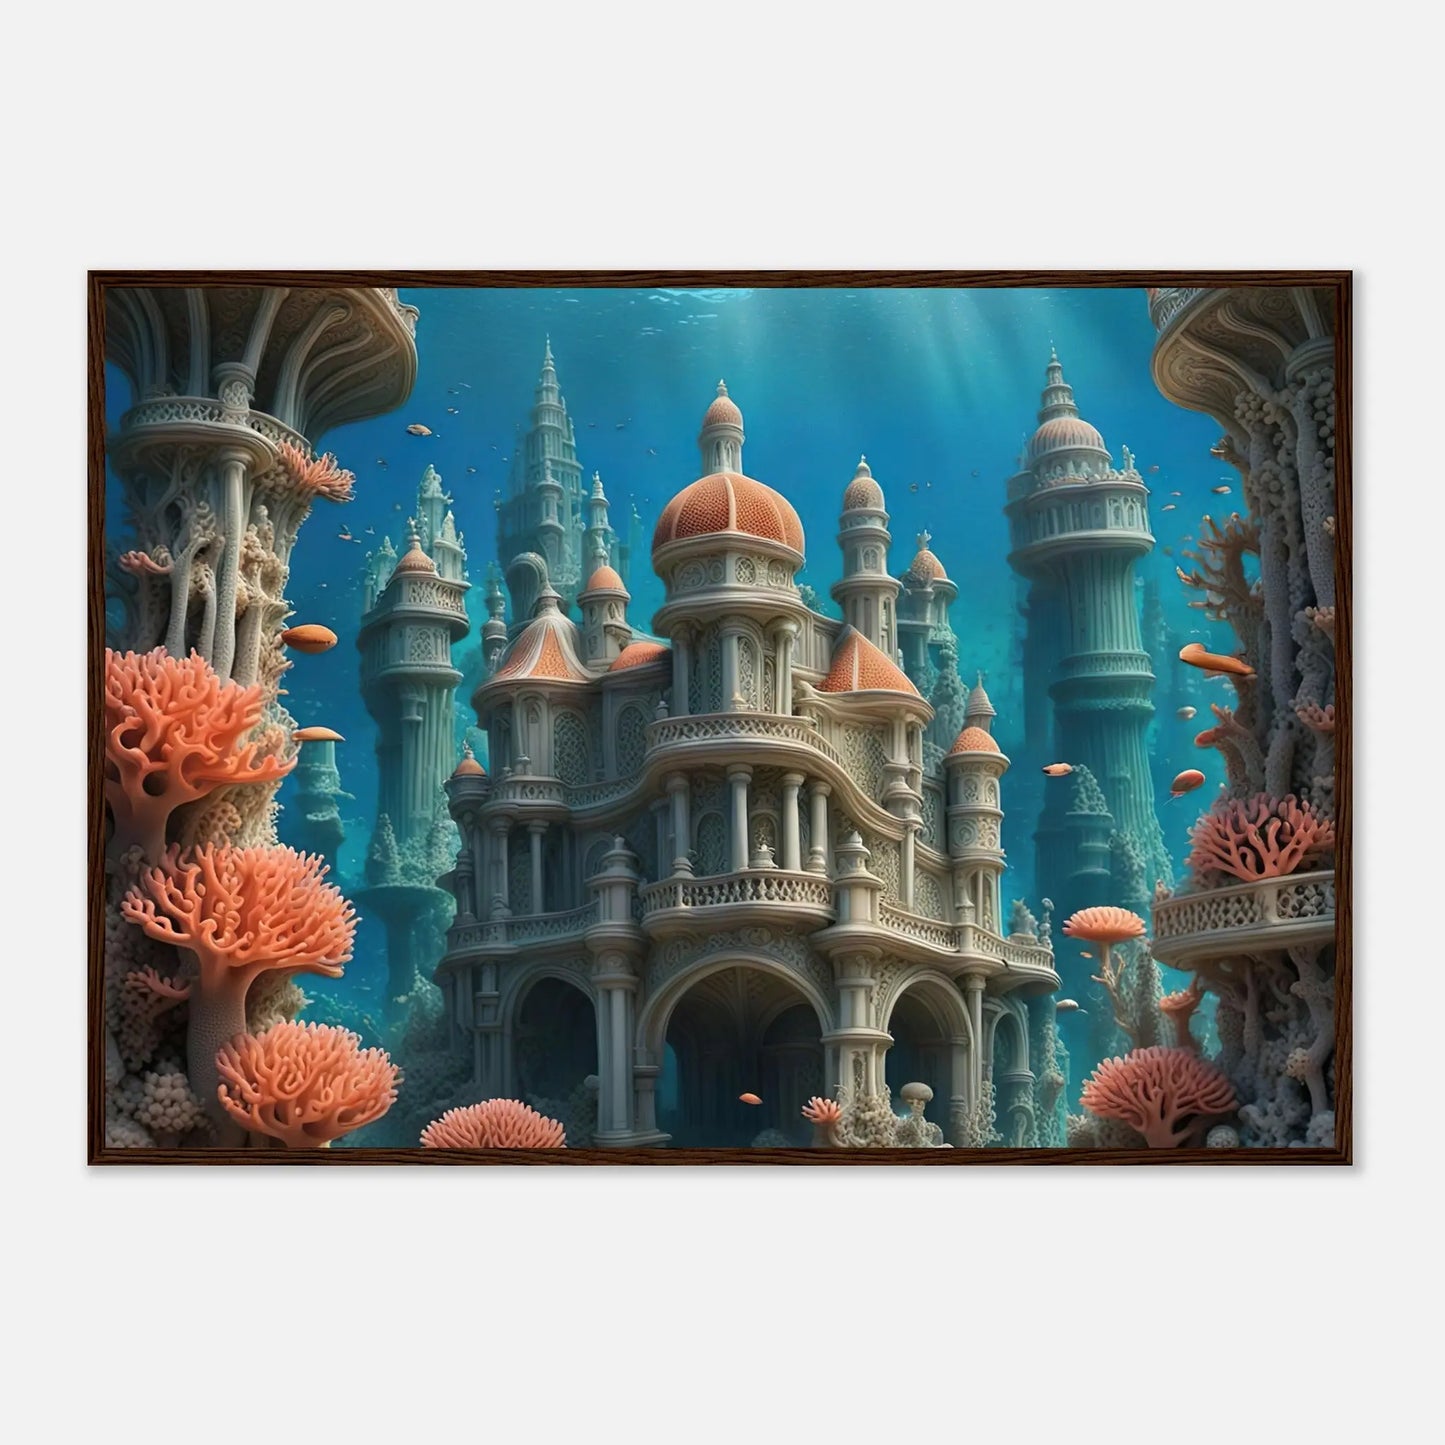 Gerahmtes Premium-Poster - Unterwasserwelt - Digitaler Stil, KI-Kunst - RolConArt, Unterwasserlandschaften, 70x100-cm-28x40-Dunkler-Holzrahmen